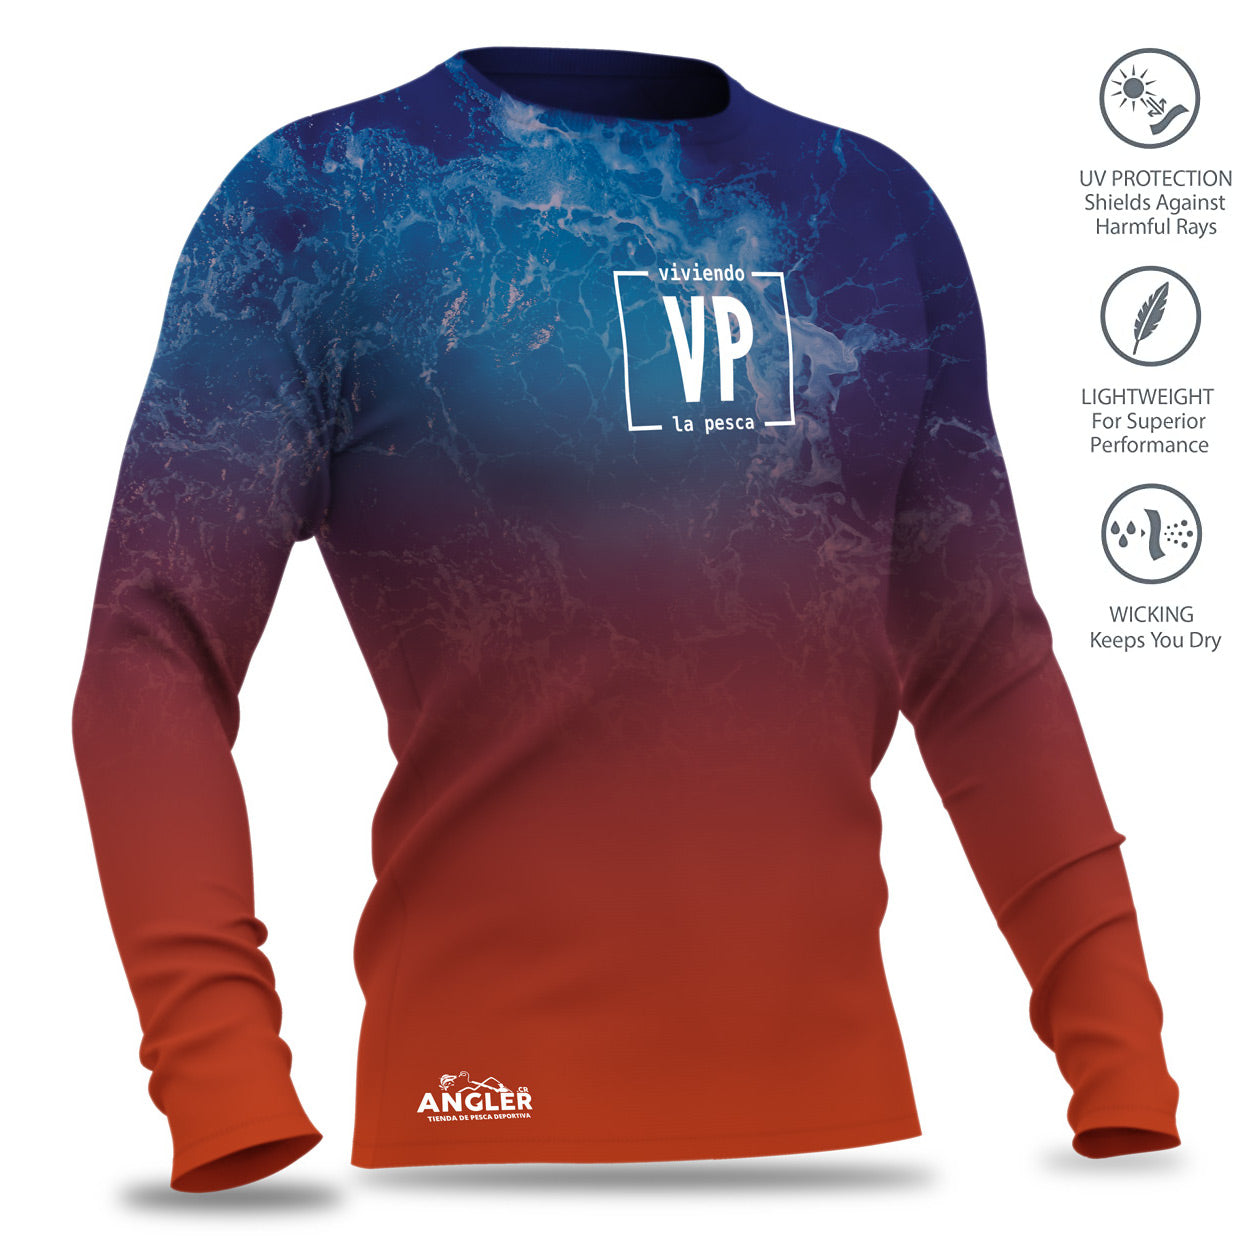 Camiseta Coastal Flagship con Protección UV, Secado Rápido, Respirable